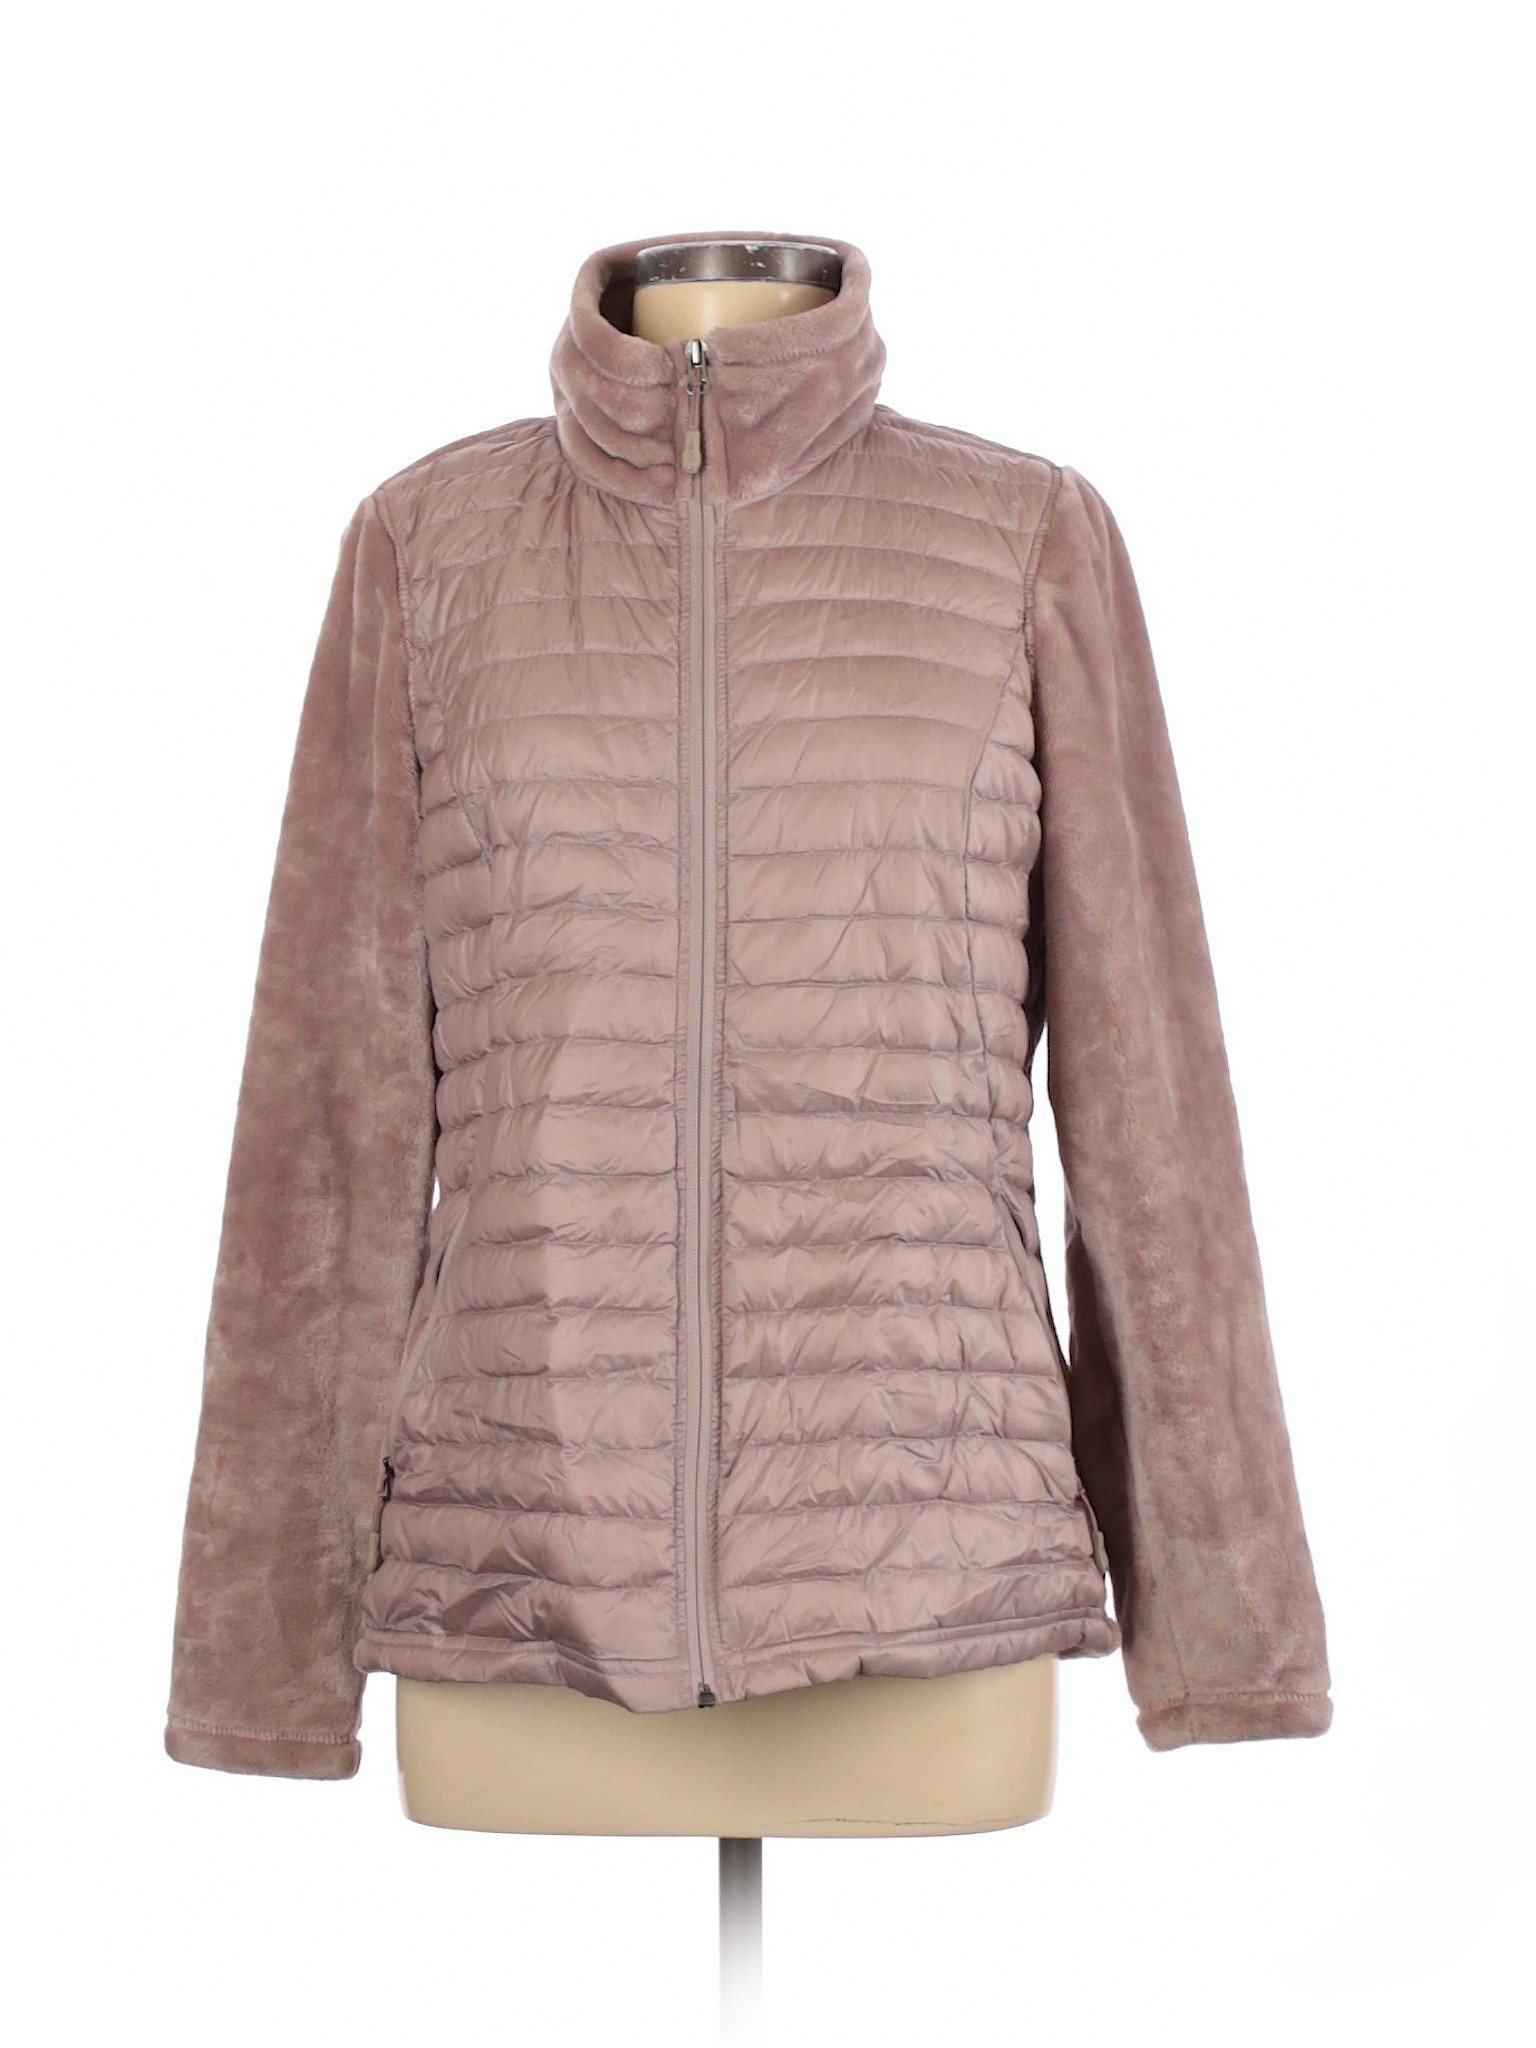 32 Degrees Women Pink Jacket M | eBay